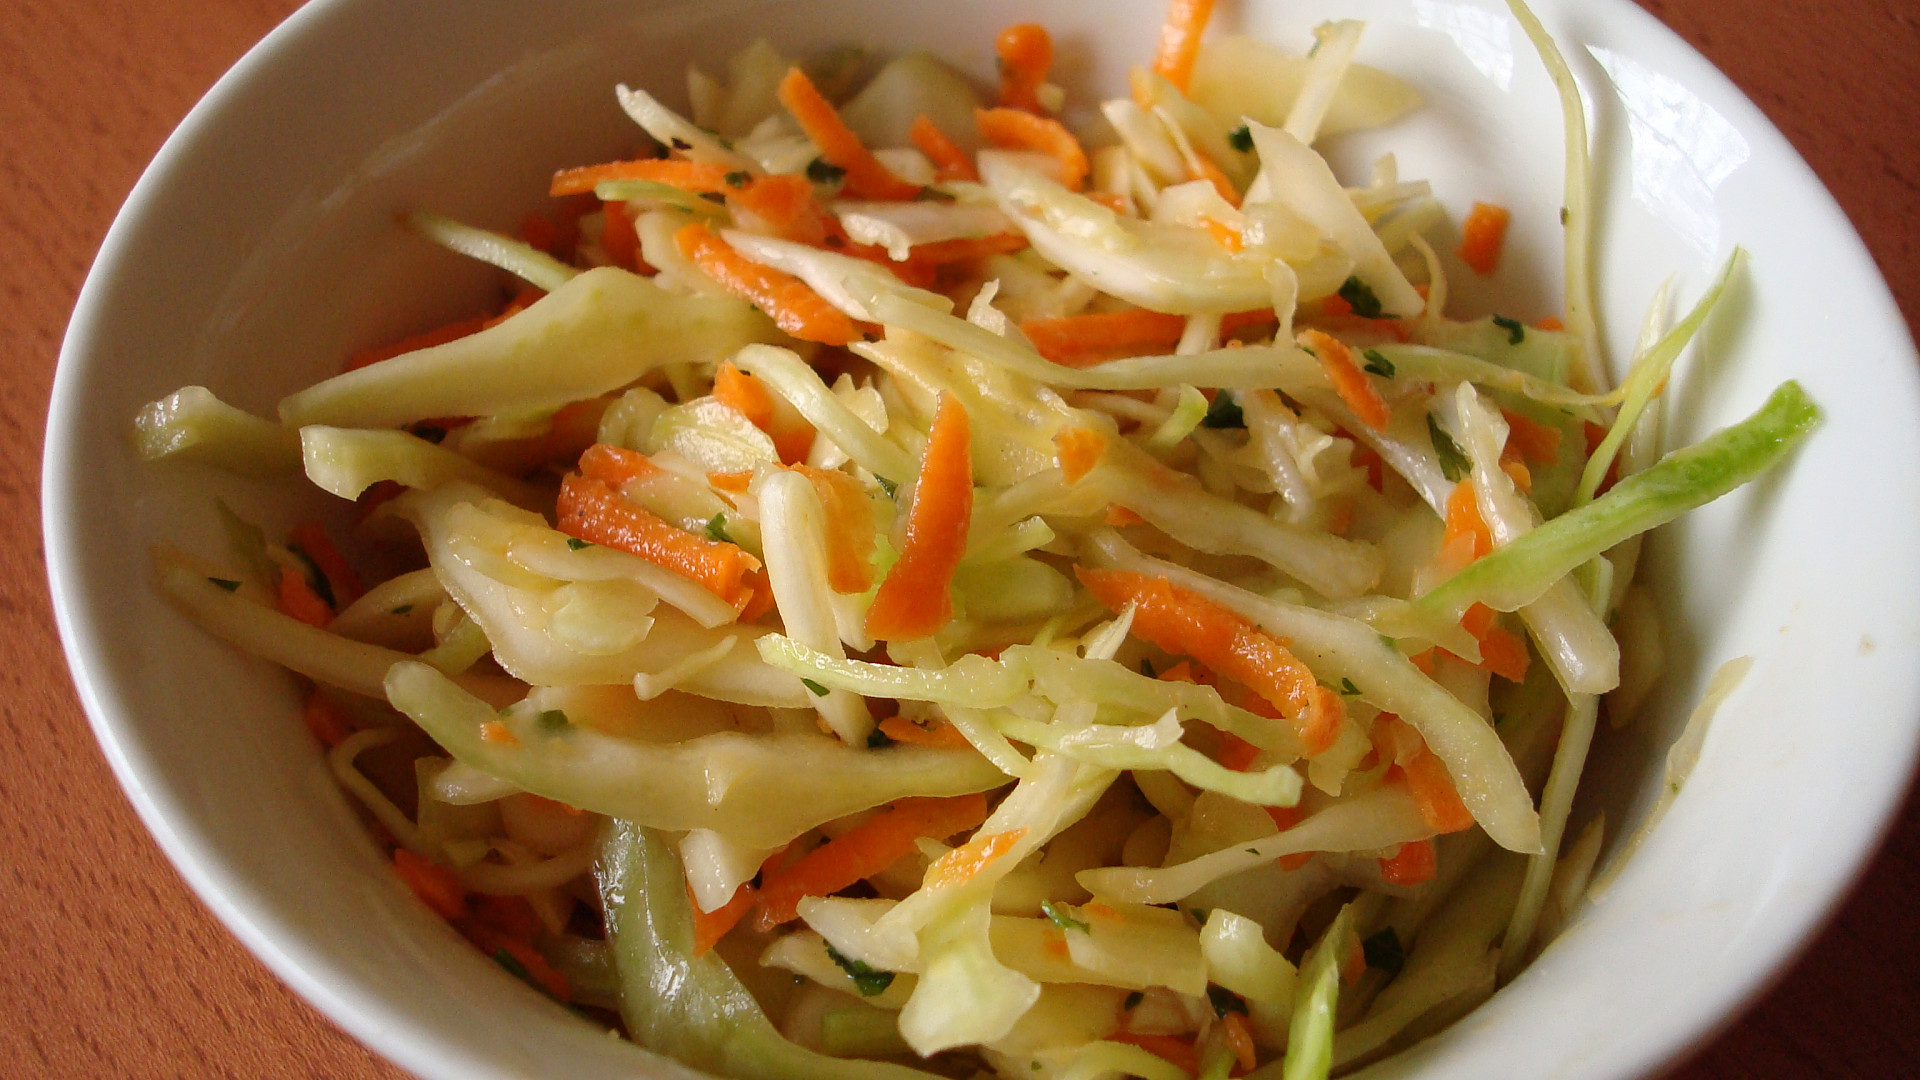 jak připravit zelný salát z čerstvého zelí? je skvělou přílohou k obědu i ke grilovaným pokrmům